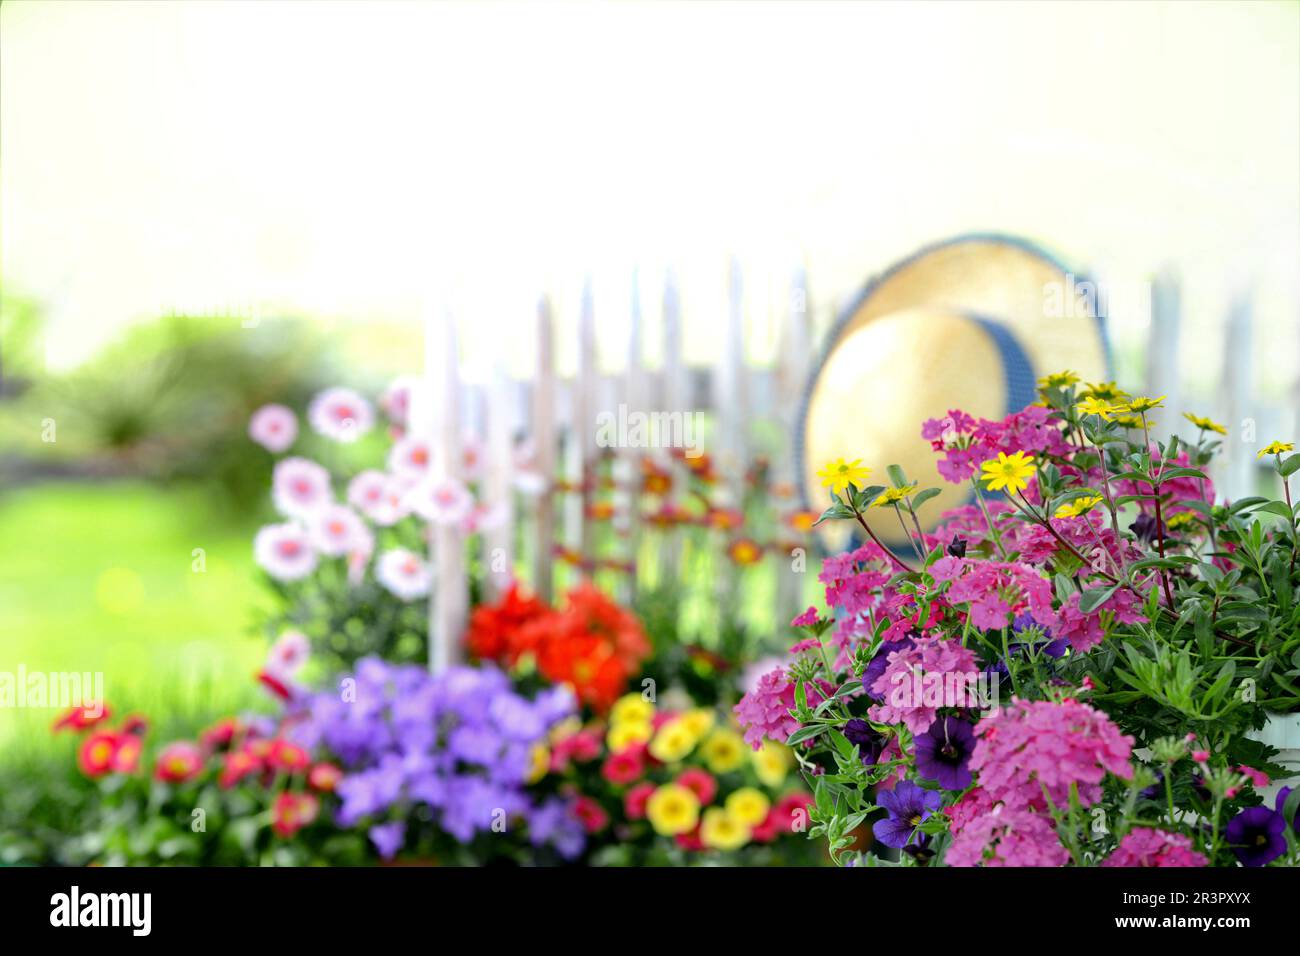 Farbenfrohe Blumen in einem Garten mit Strohhut und Gartenzaun Stockfoto